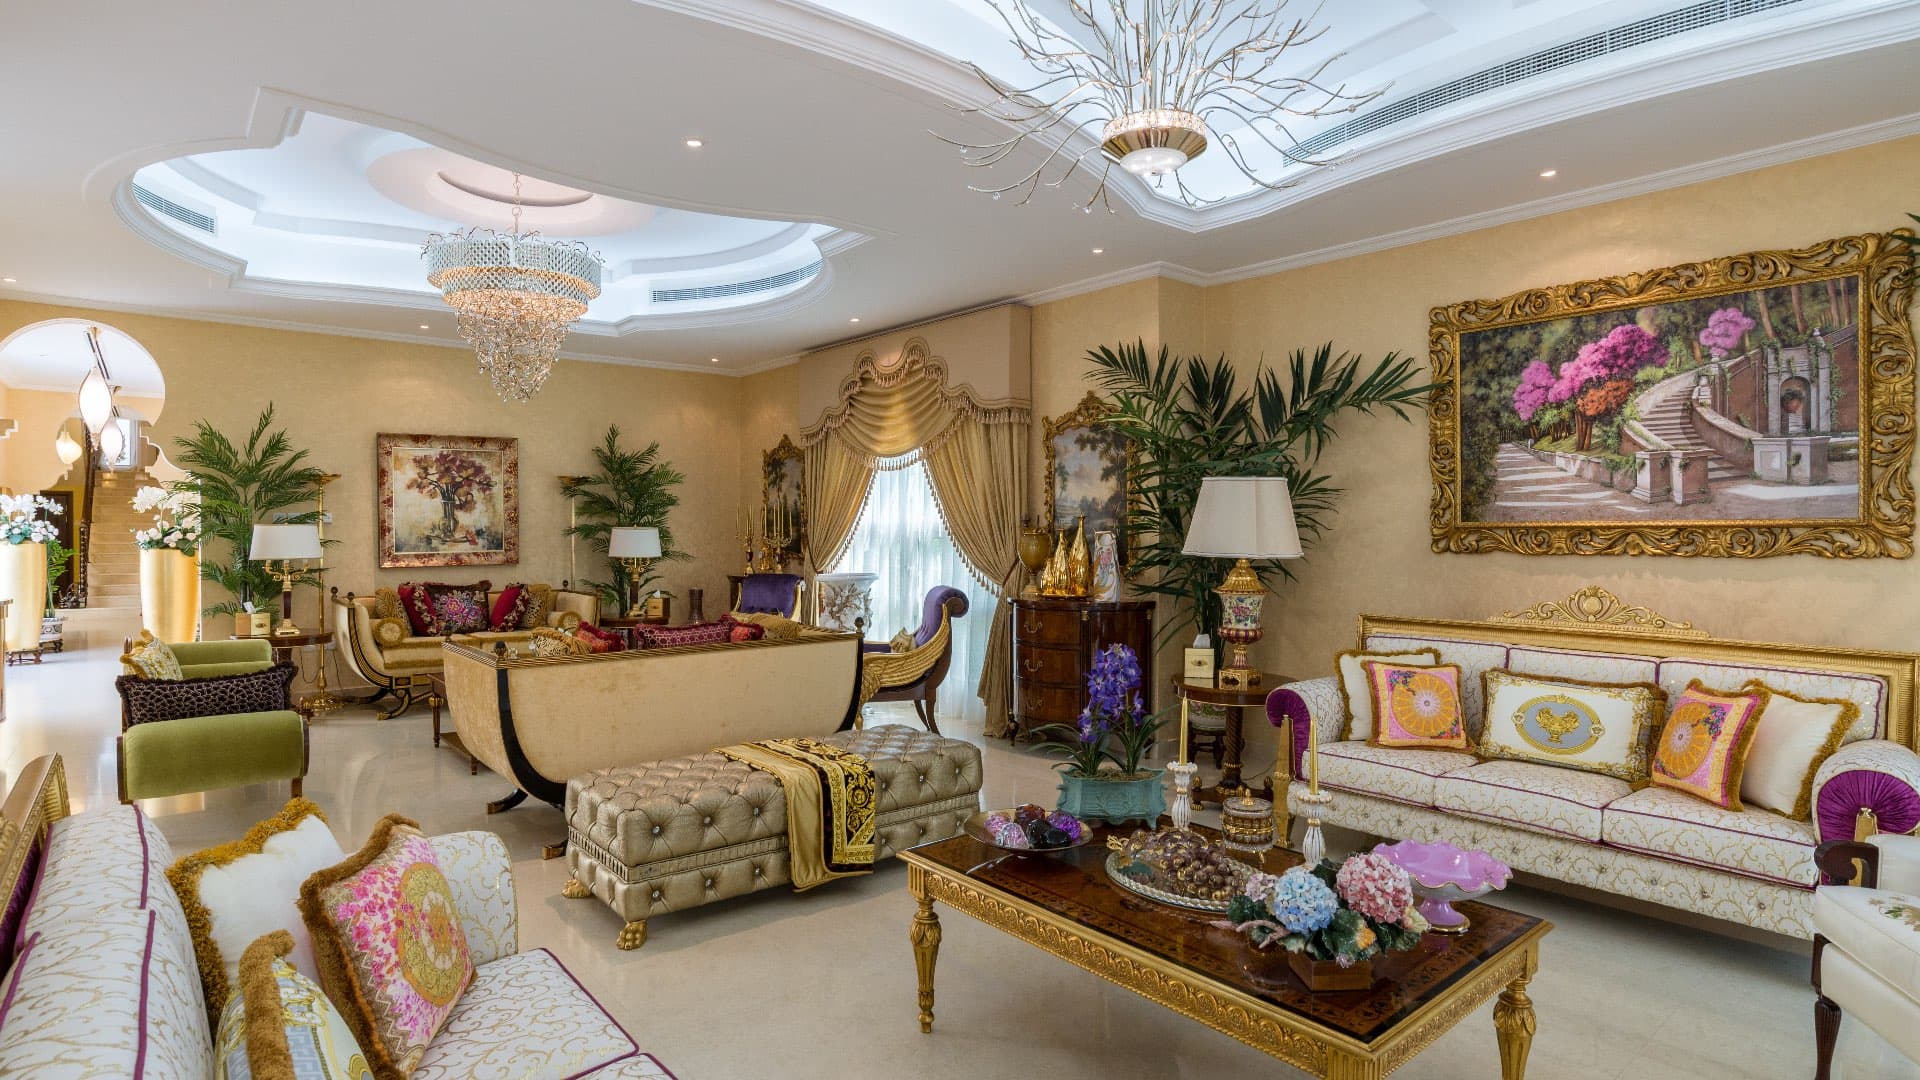 7 Bedroom Villa For Rent Al Barsha 3 Lp08020 2e81452cf7fd0600.jpg